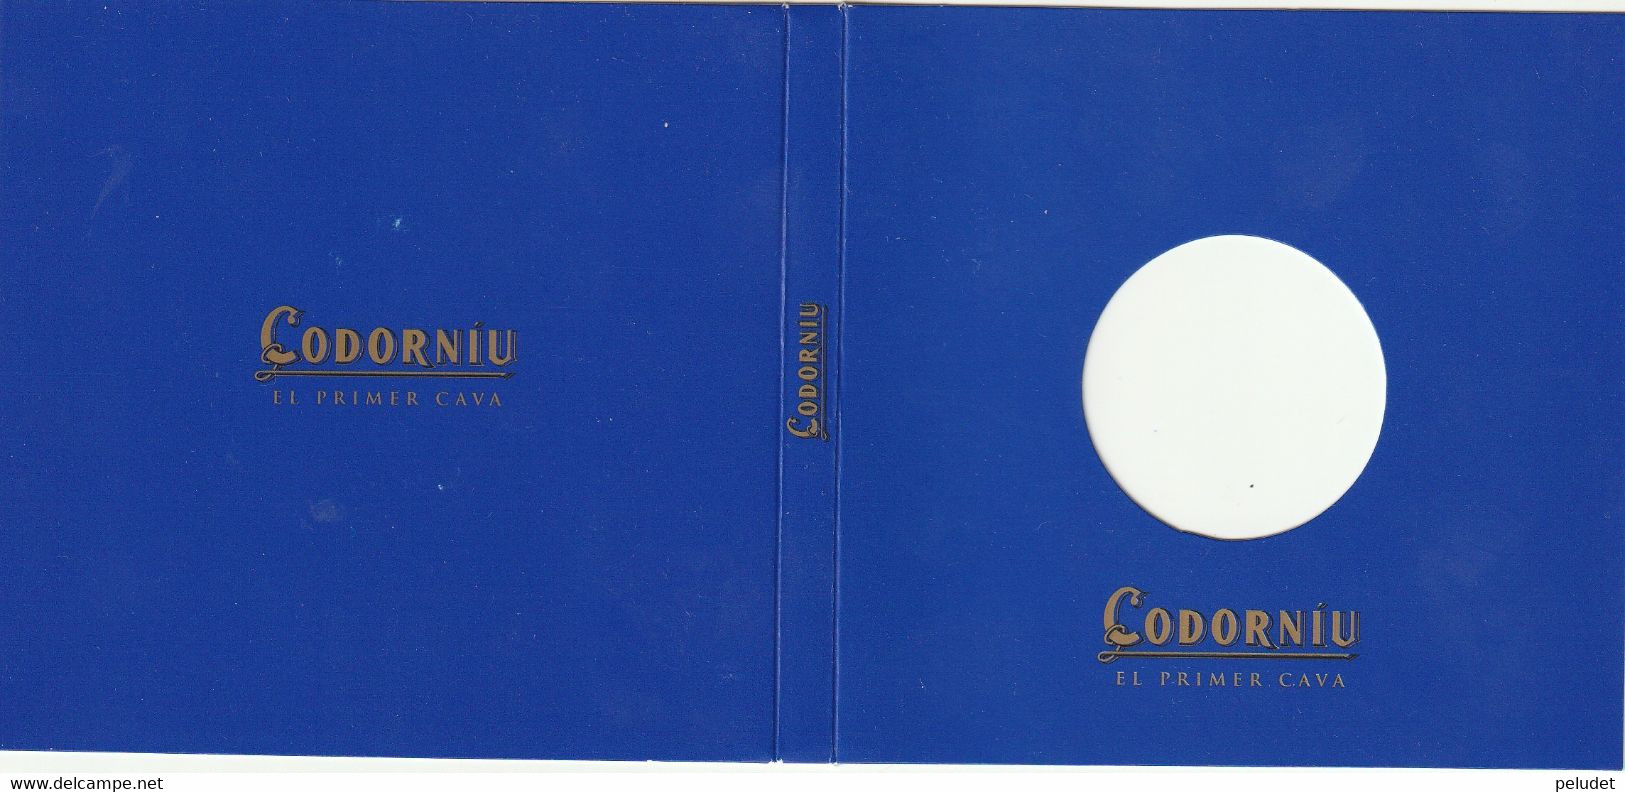 Europa, Medalla Medaille Medal, Enero 1999, Codorniu, 1, Con Certificado De Garantia, With Warranty Certificate - Professionals/Firms